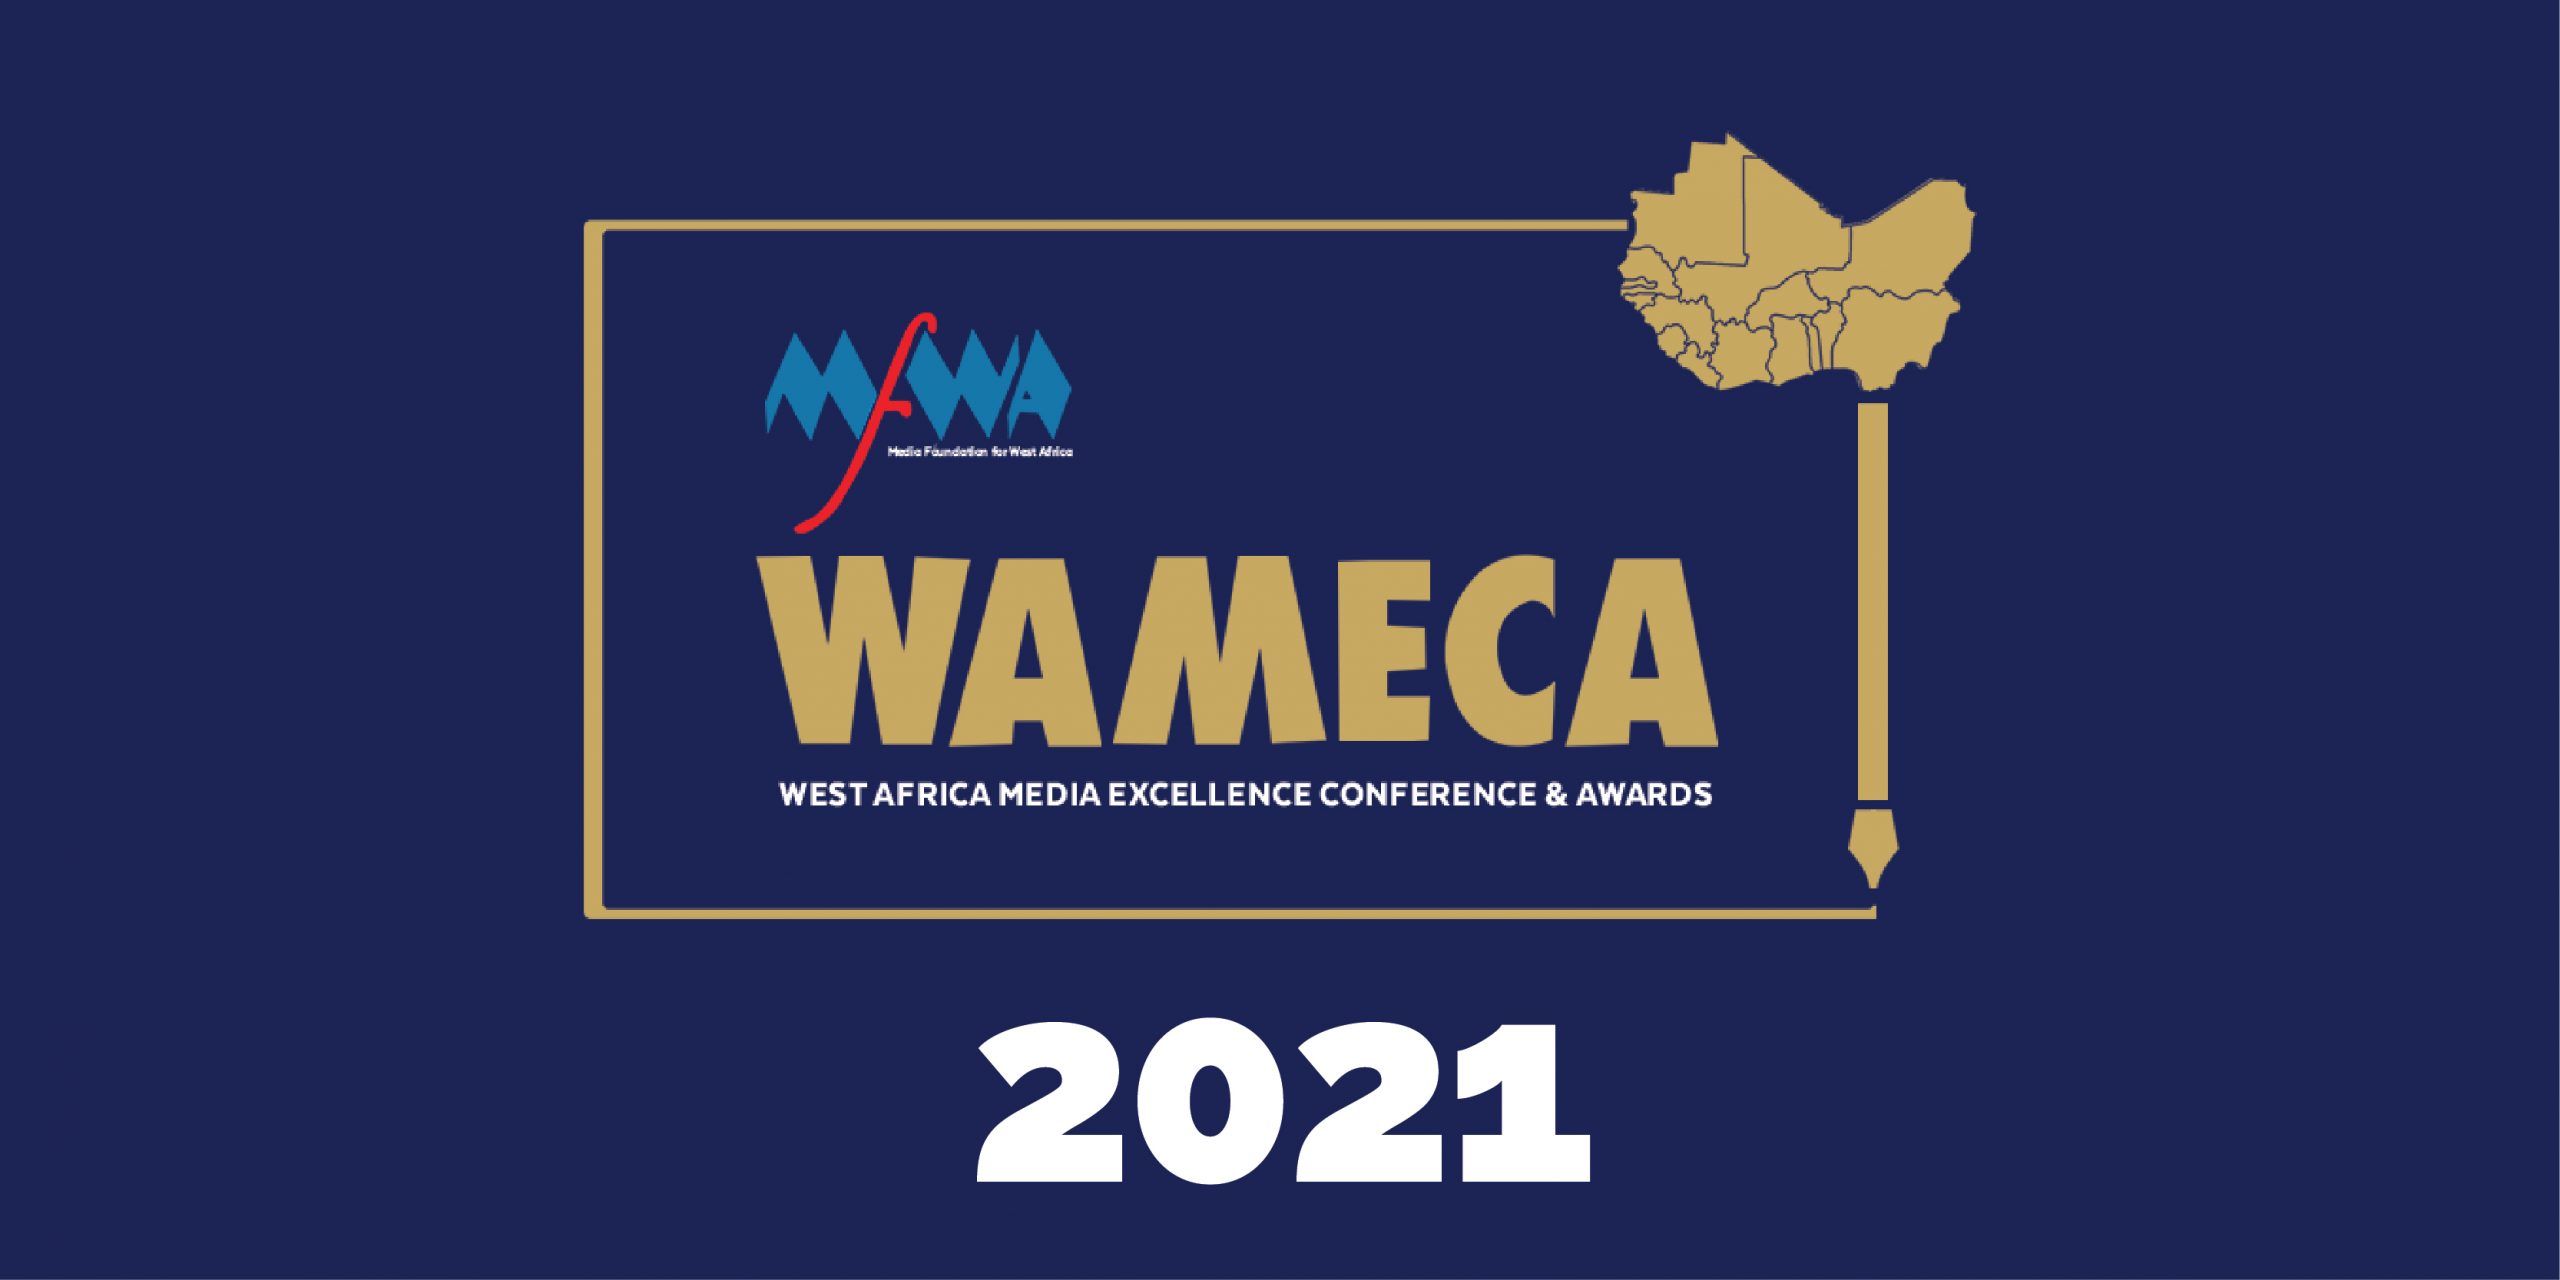 Wameca 2021 : Appel à soumission – Catégories spéciales sur le genre et la violence basée sur le genre